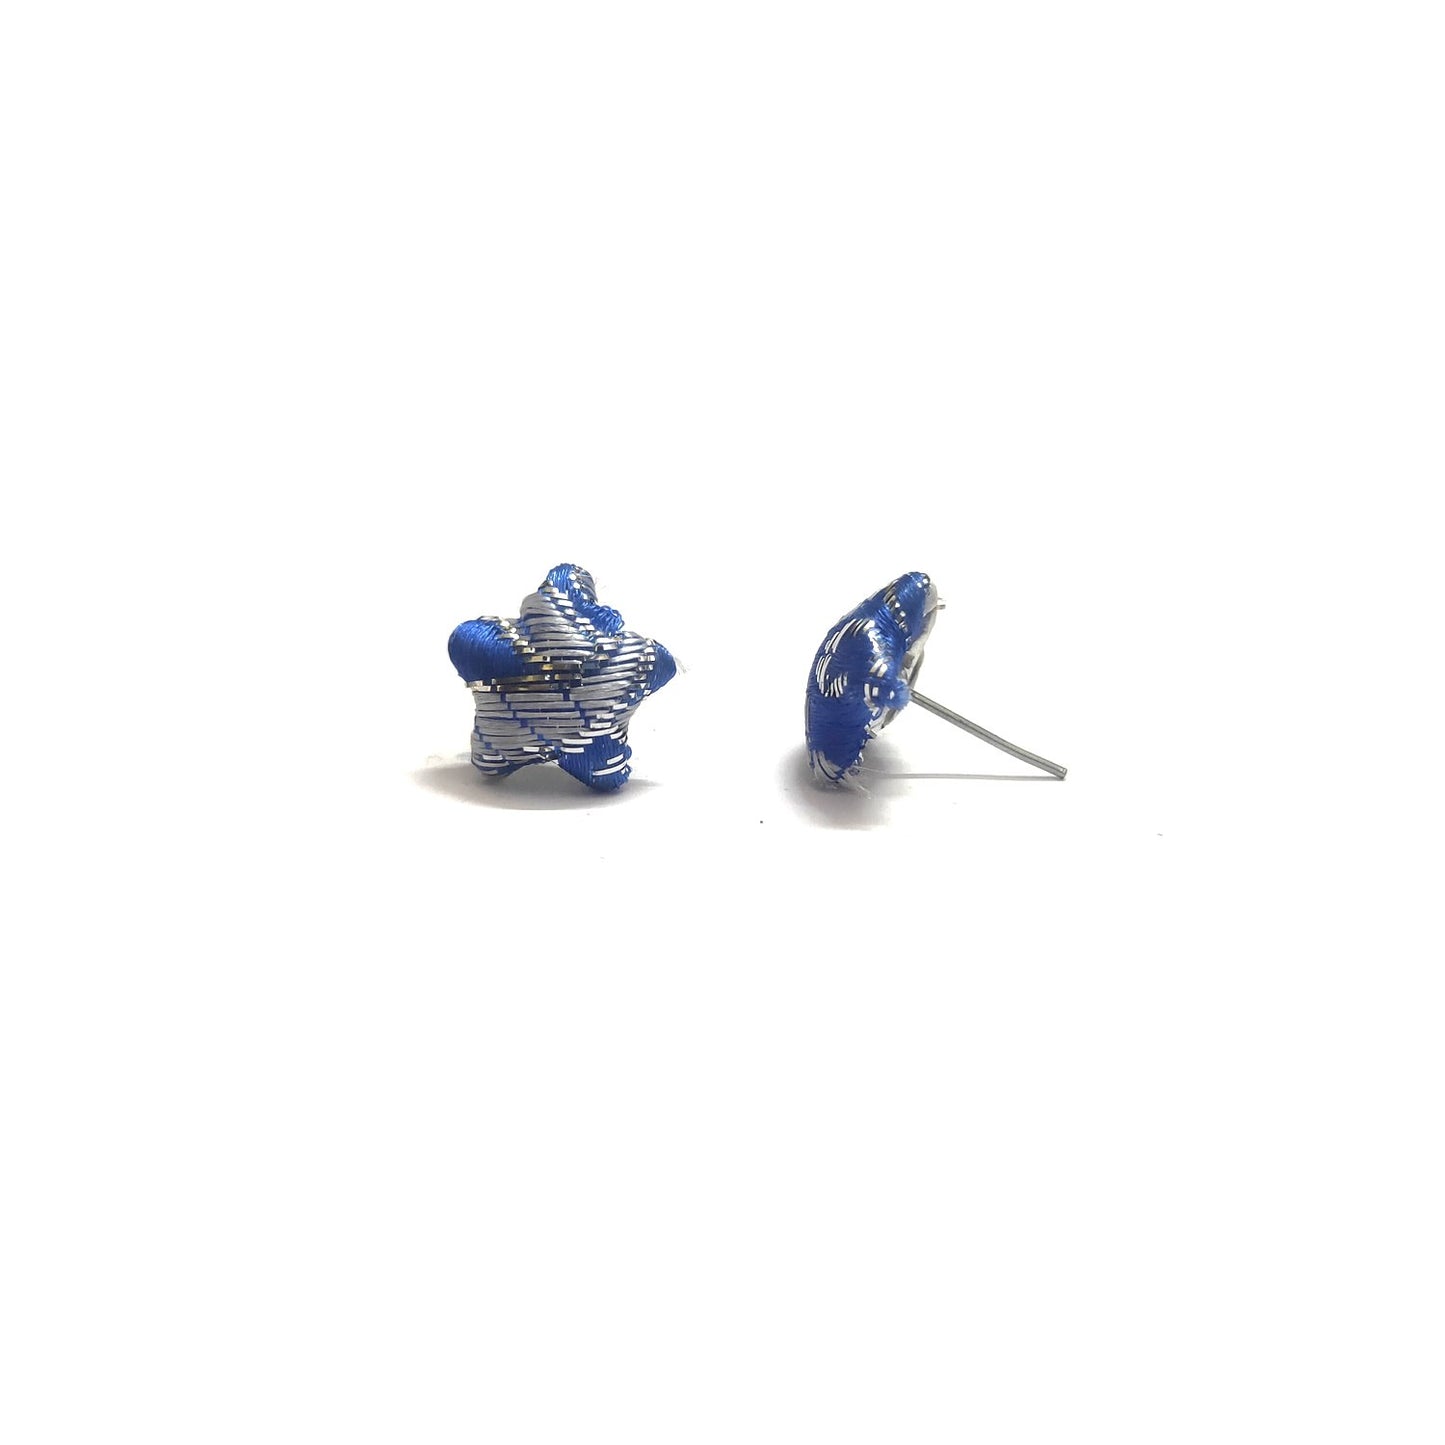 Anokhi Ada Fancy Small Star Shaped Stud Earrings for Girls ( Blue, AS-07D )